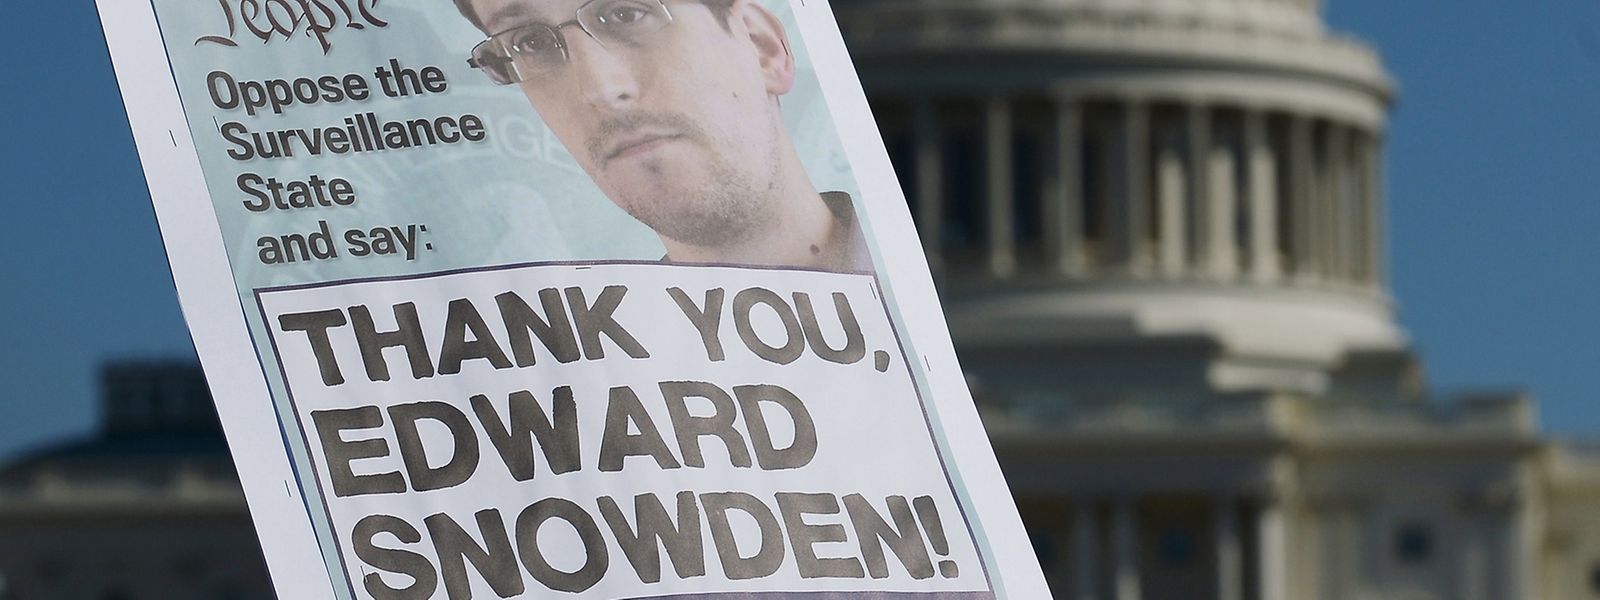 Der wohl prominenteste Whistleblower und ehemalige CIA-Mitarbeiter, Edward Snowden leakte Informationen über die weltweiten Überwachungs- und Spionagepraktiken von Geheimdiensten.